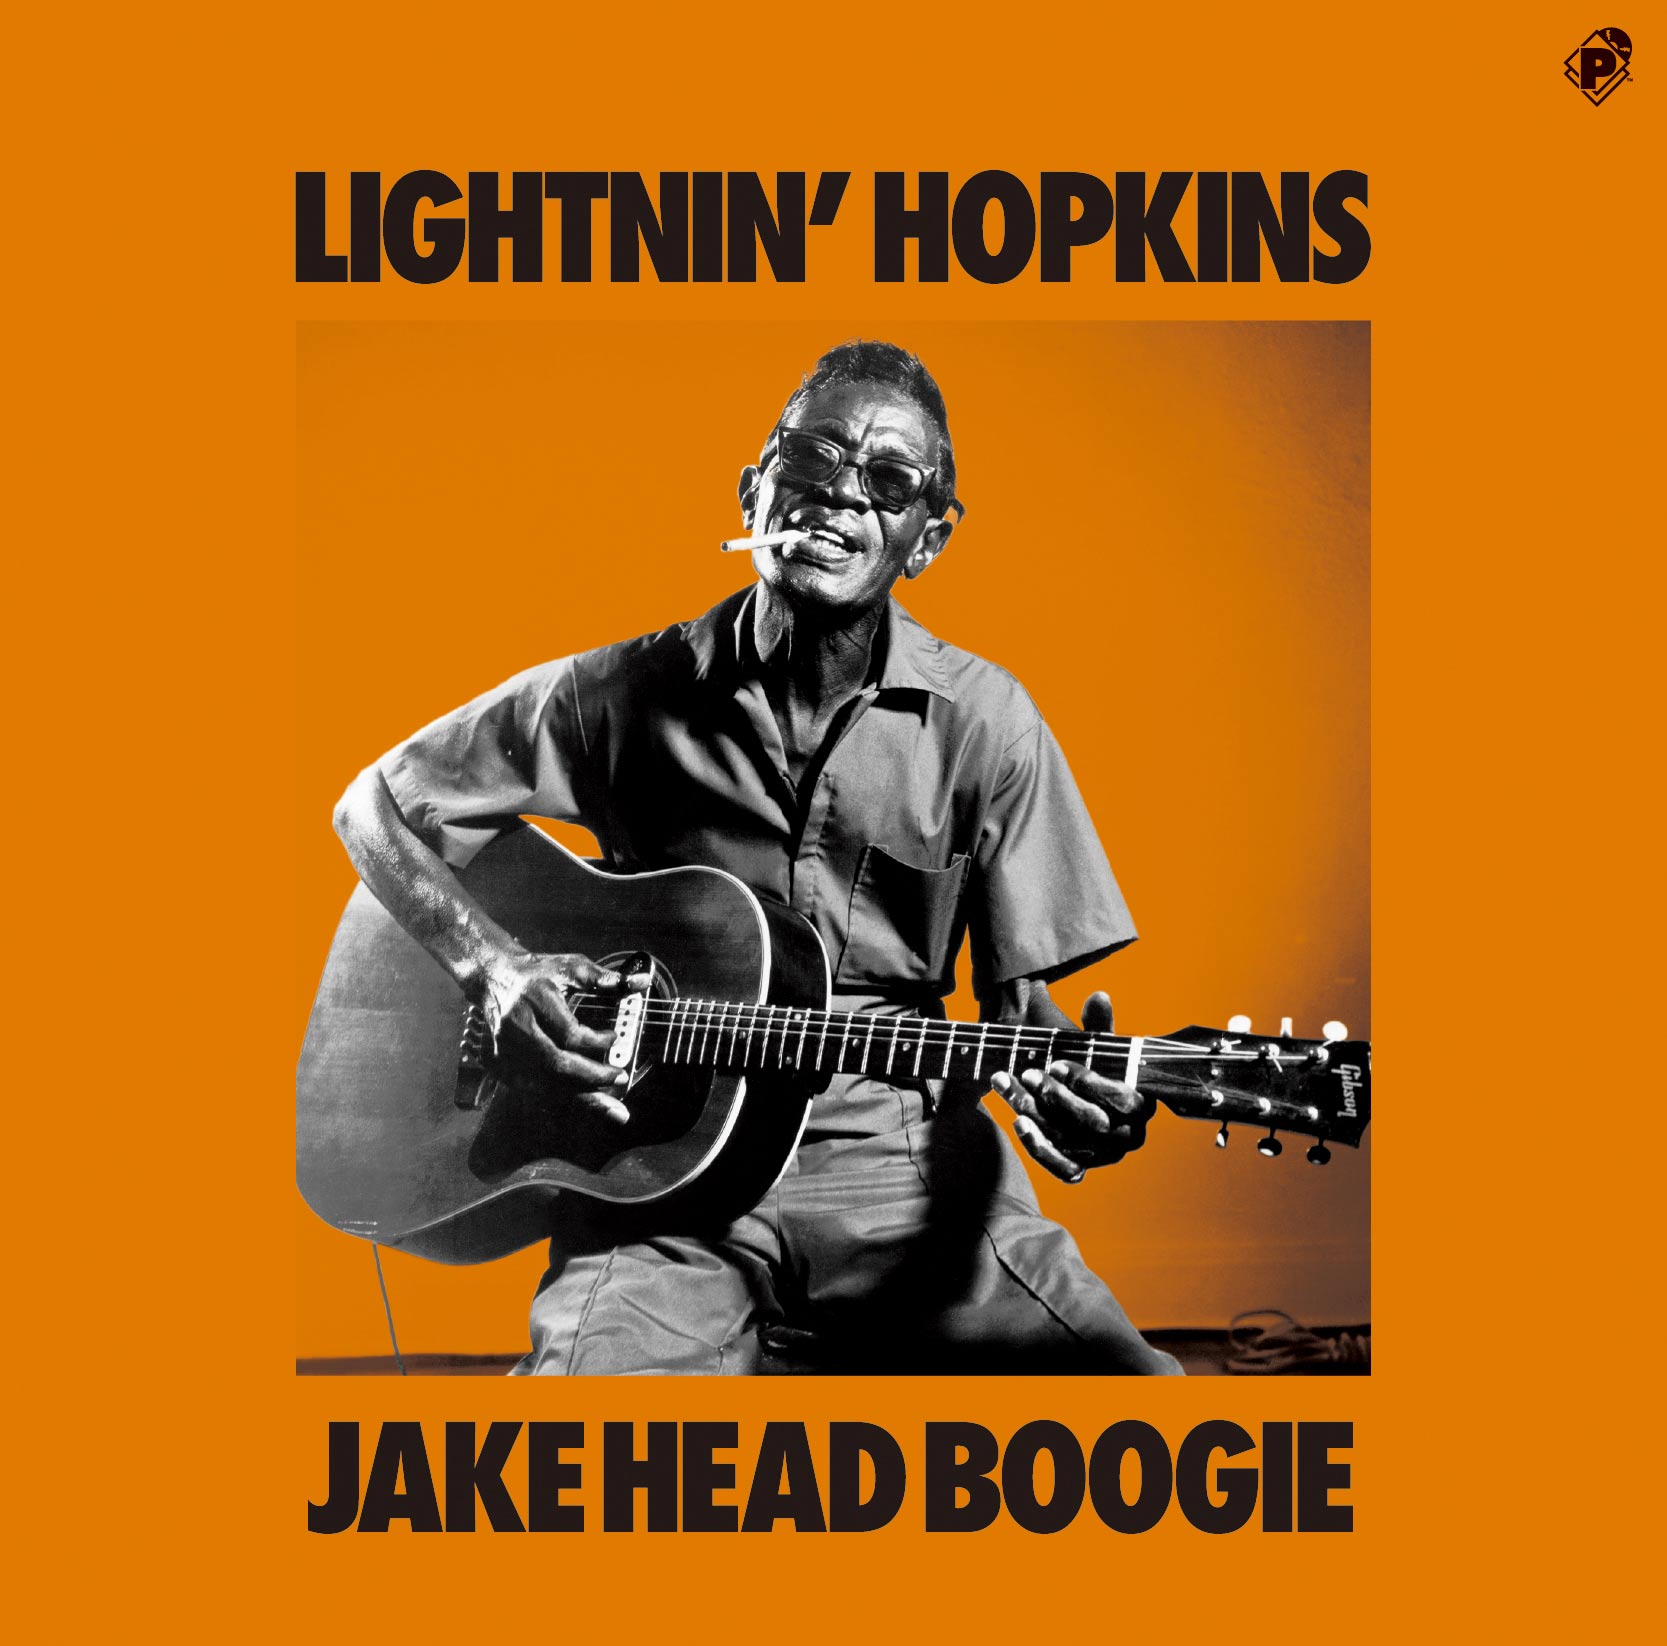 Jake Head Boogie